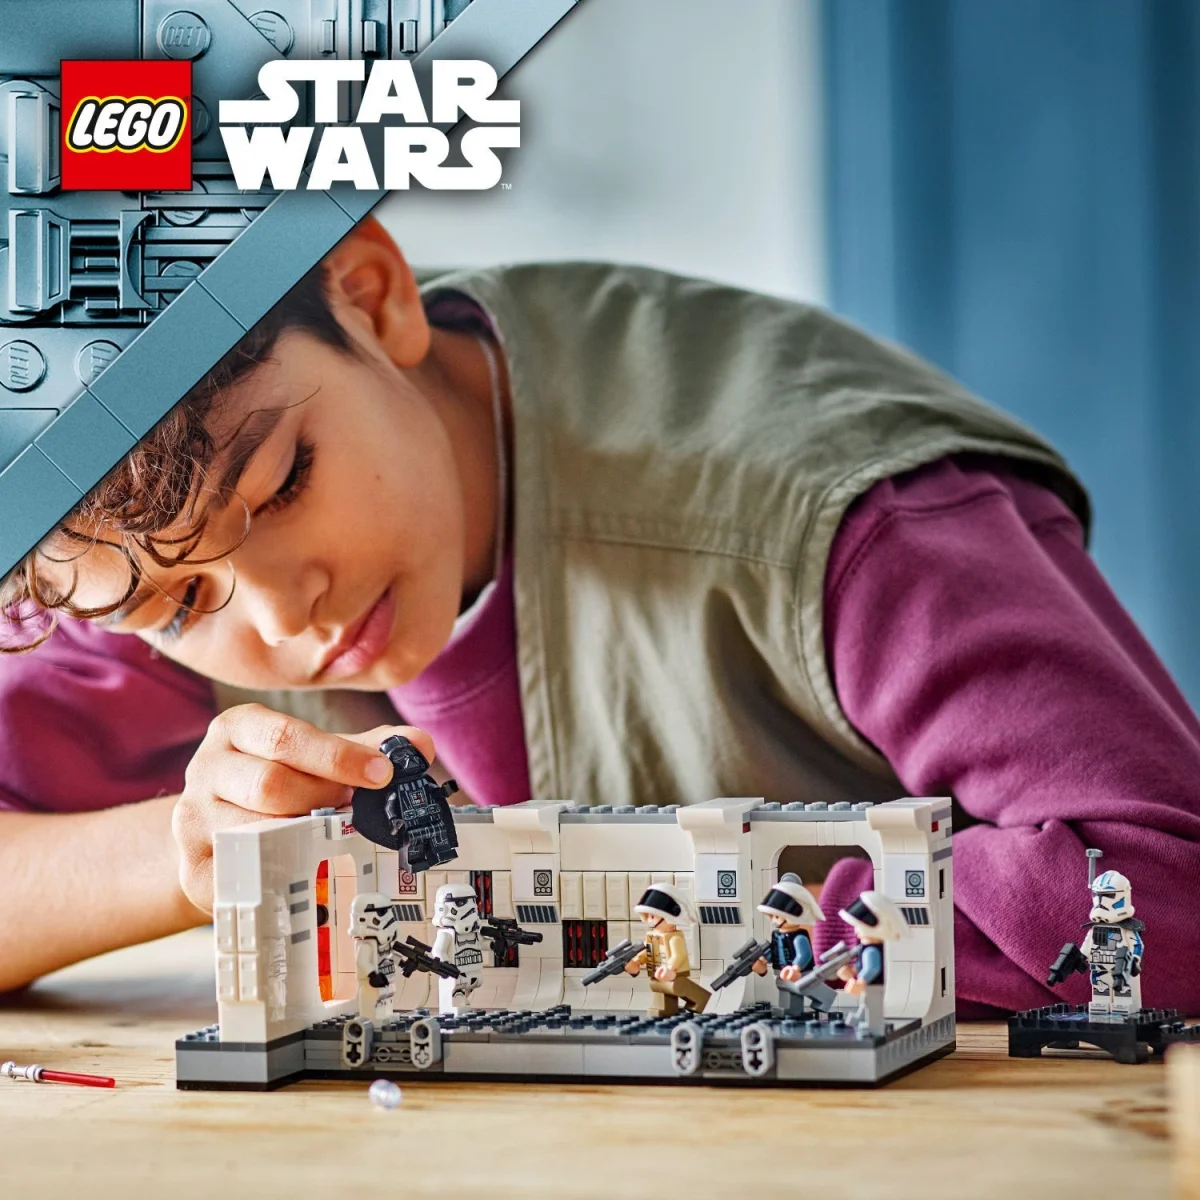 LEGO® Star Wars Das Entern der Tantive IV 75387